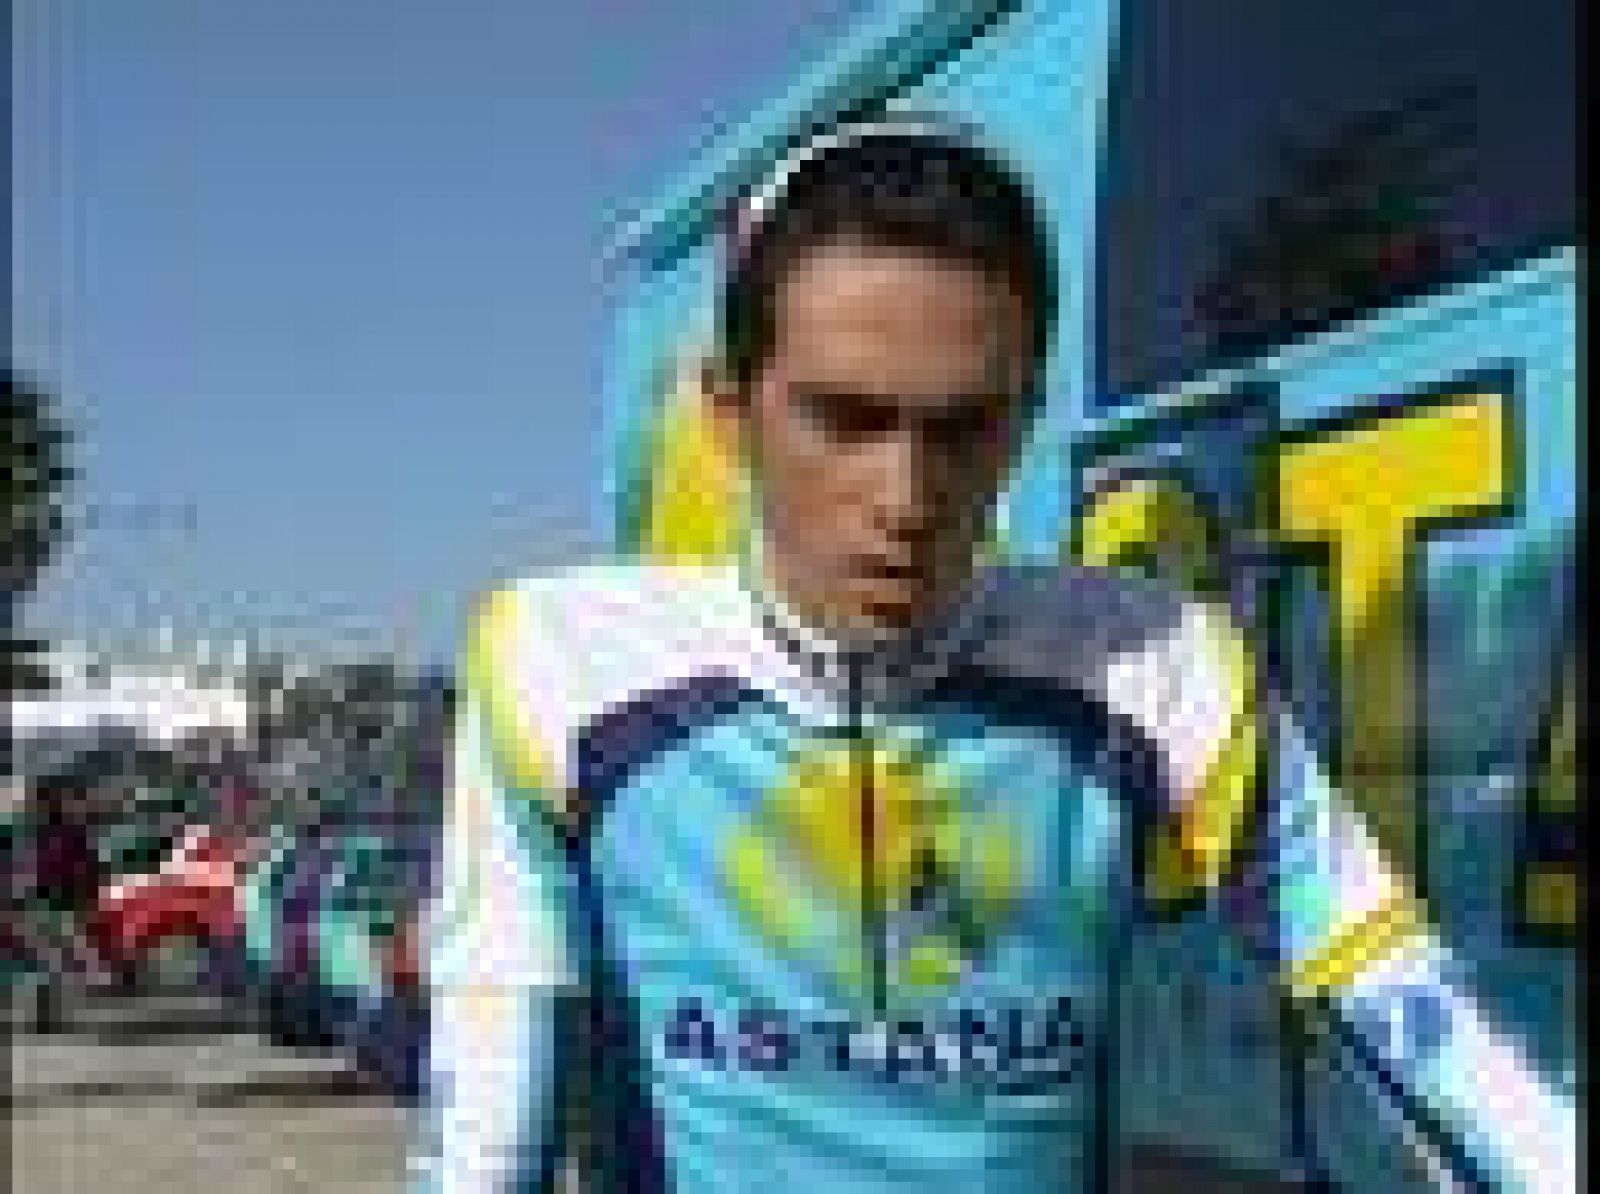  El ganador del Tour de Francia de 2007, Alberto Contador ha confirmado a TVE que este año su objetivo prioritario no es otro que volver a ganar la ronda francesa. El de Pinto no tiene tan claro que vaya a ir a La Vuelta a España.  